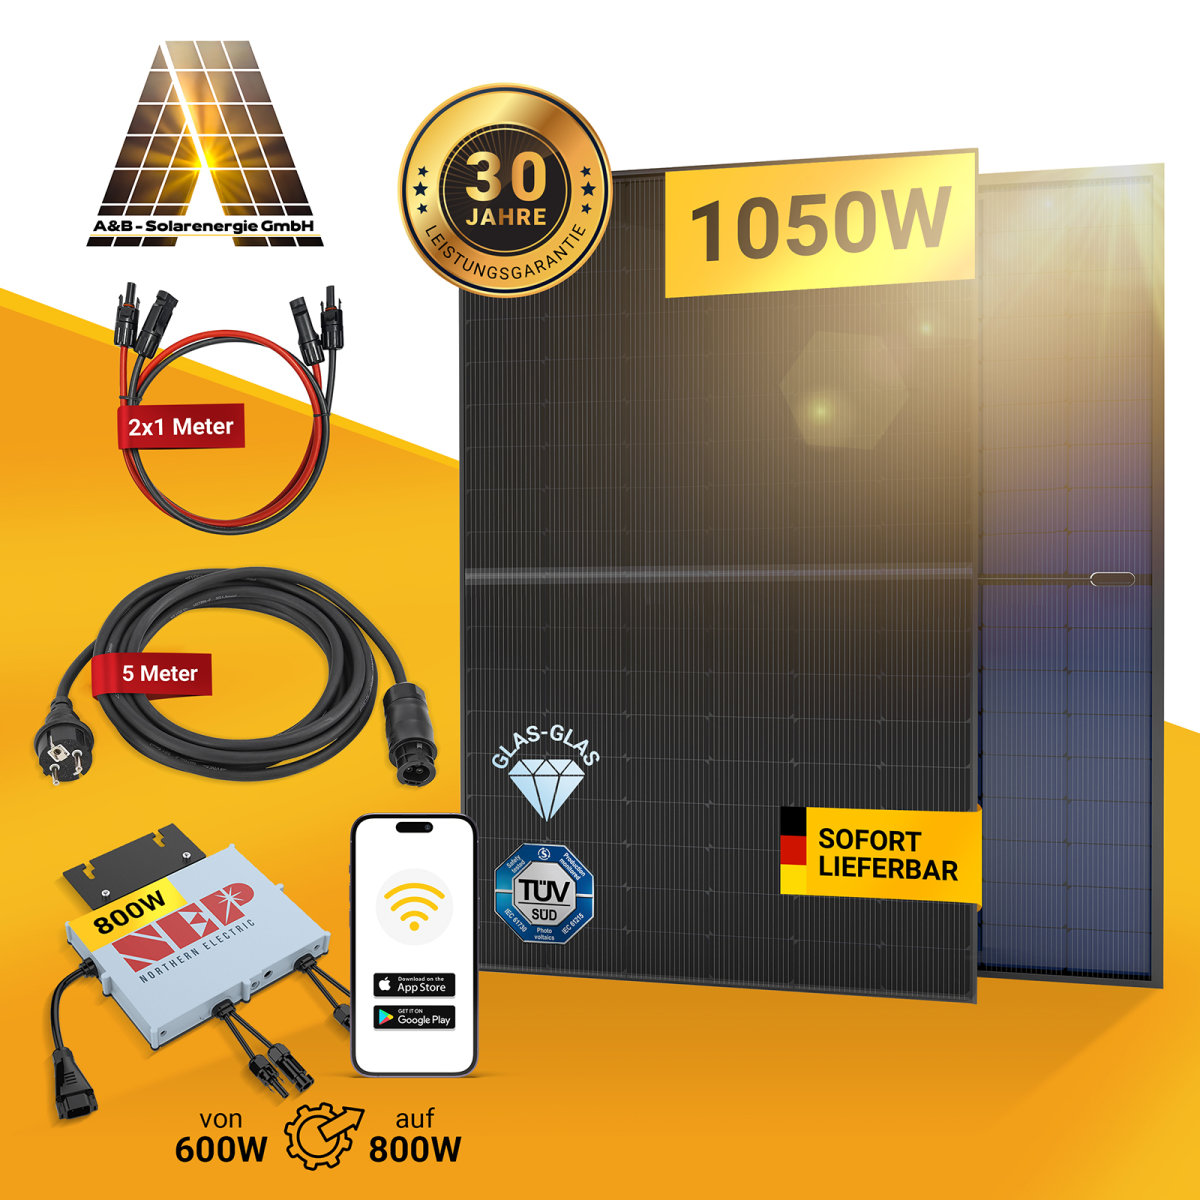 https://ab-solarenergie.de/media/image/product/5/lg/balkonkraftwerk-1050-w-glas-bifazial-nep-wechselrichter-600w-800w-mit-2-pv-modulen-a-430-520w.jpg